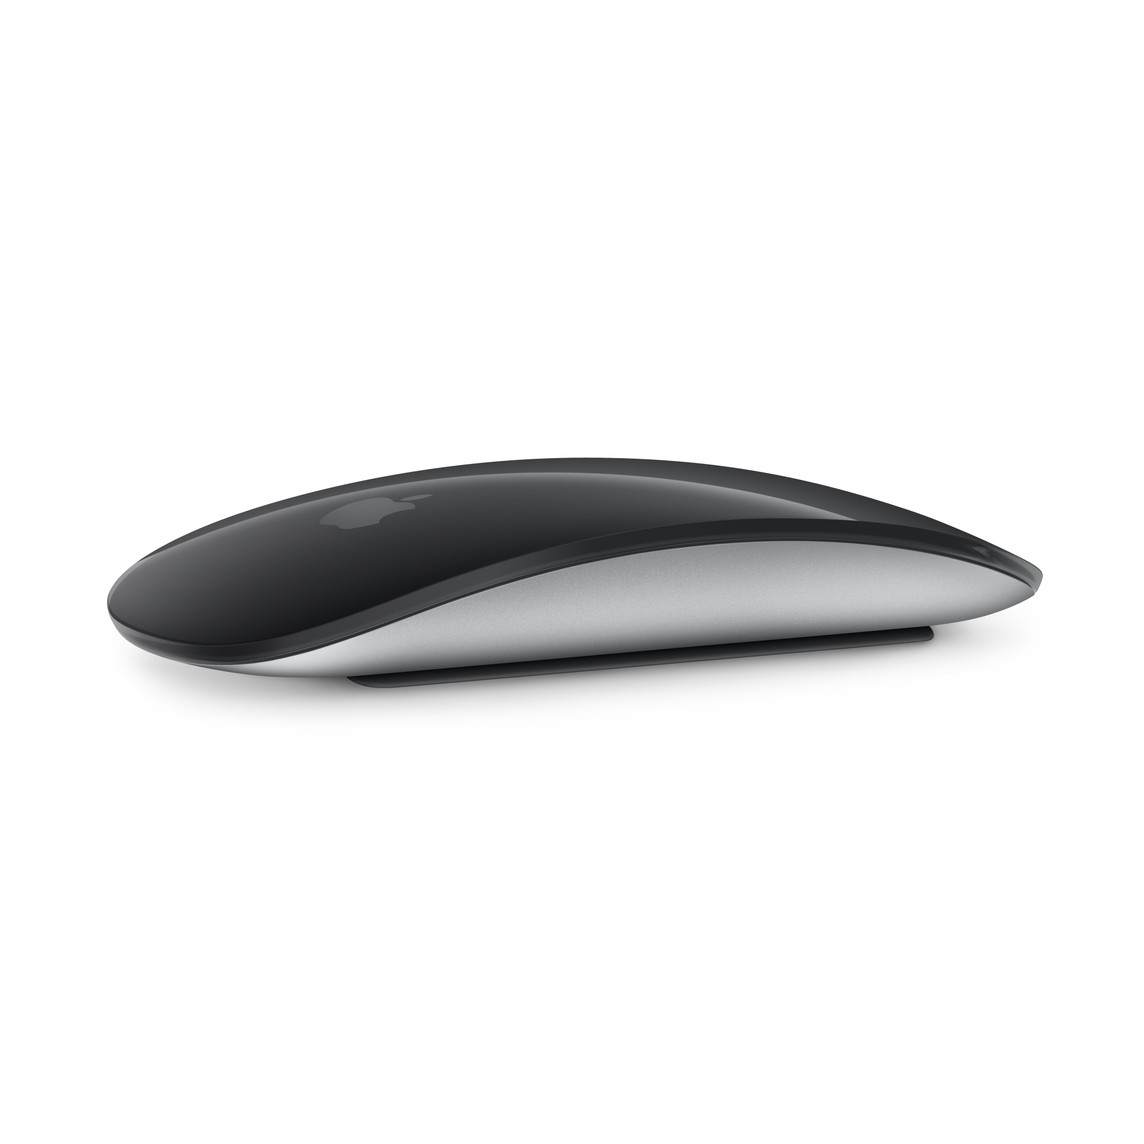 Мышь беспроводная Apple Magic Mouse - Black Multi-Touch Surface - фото